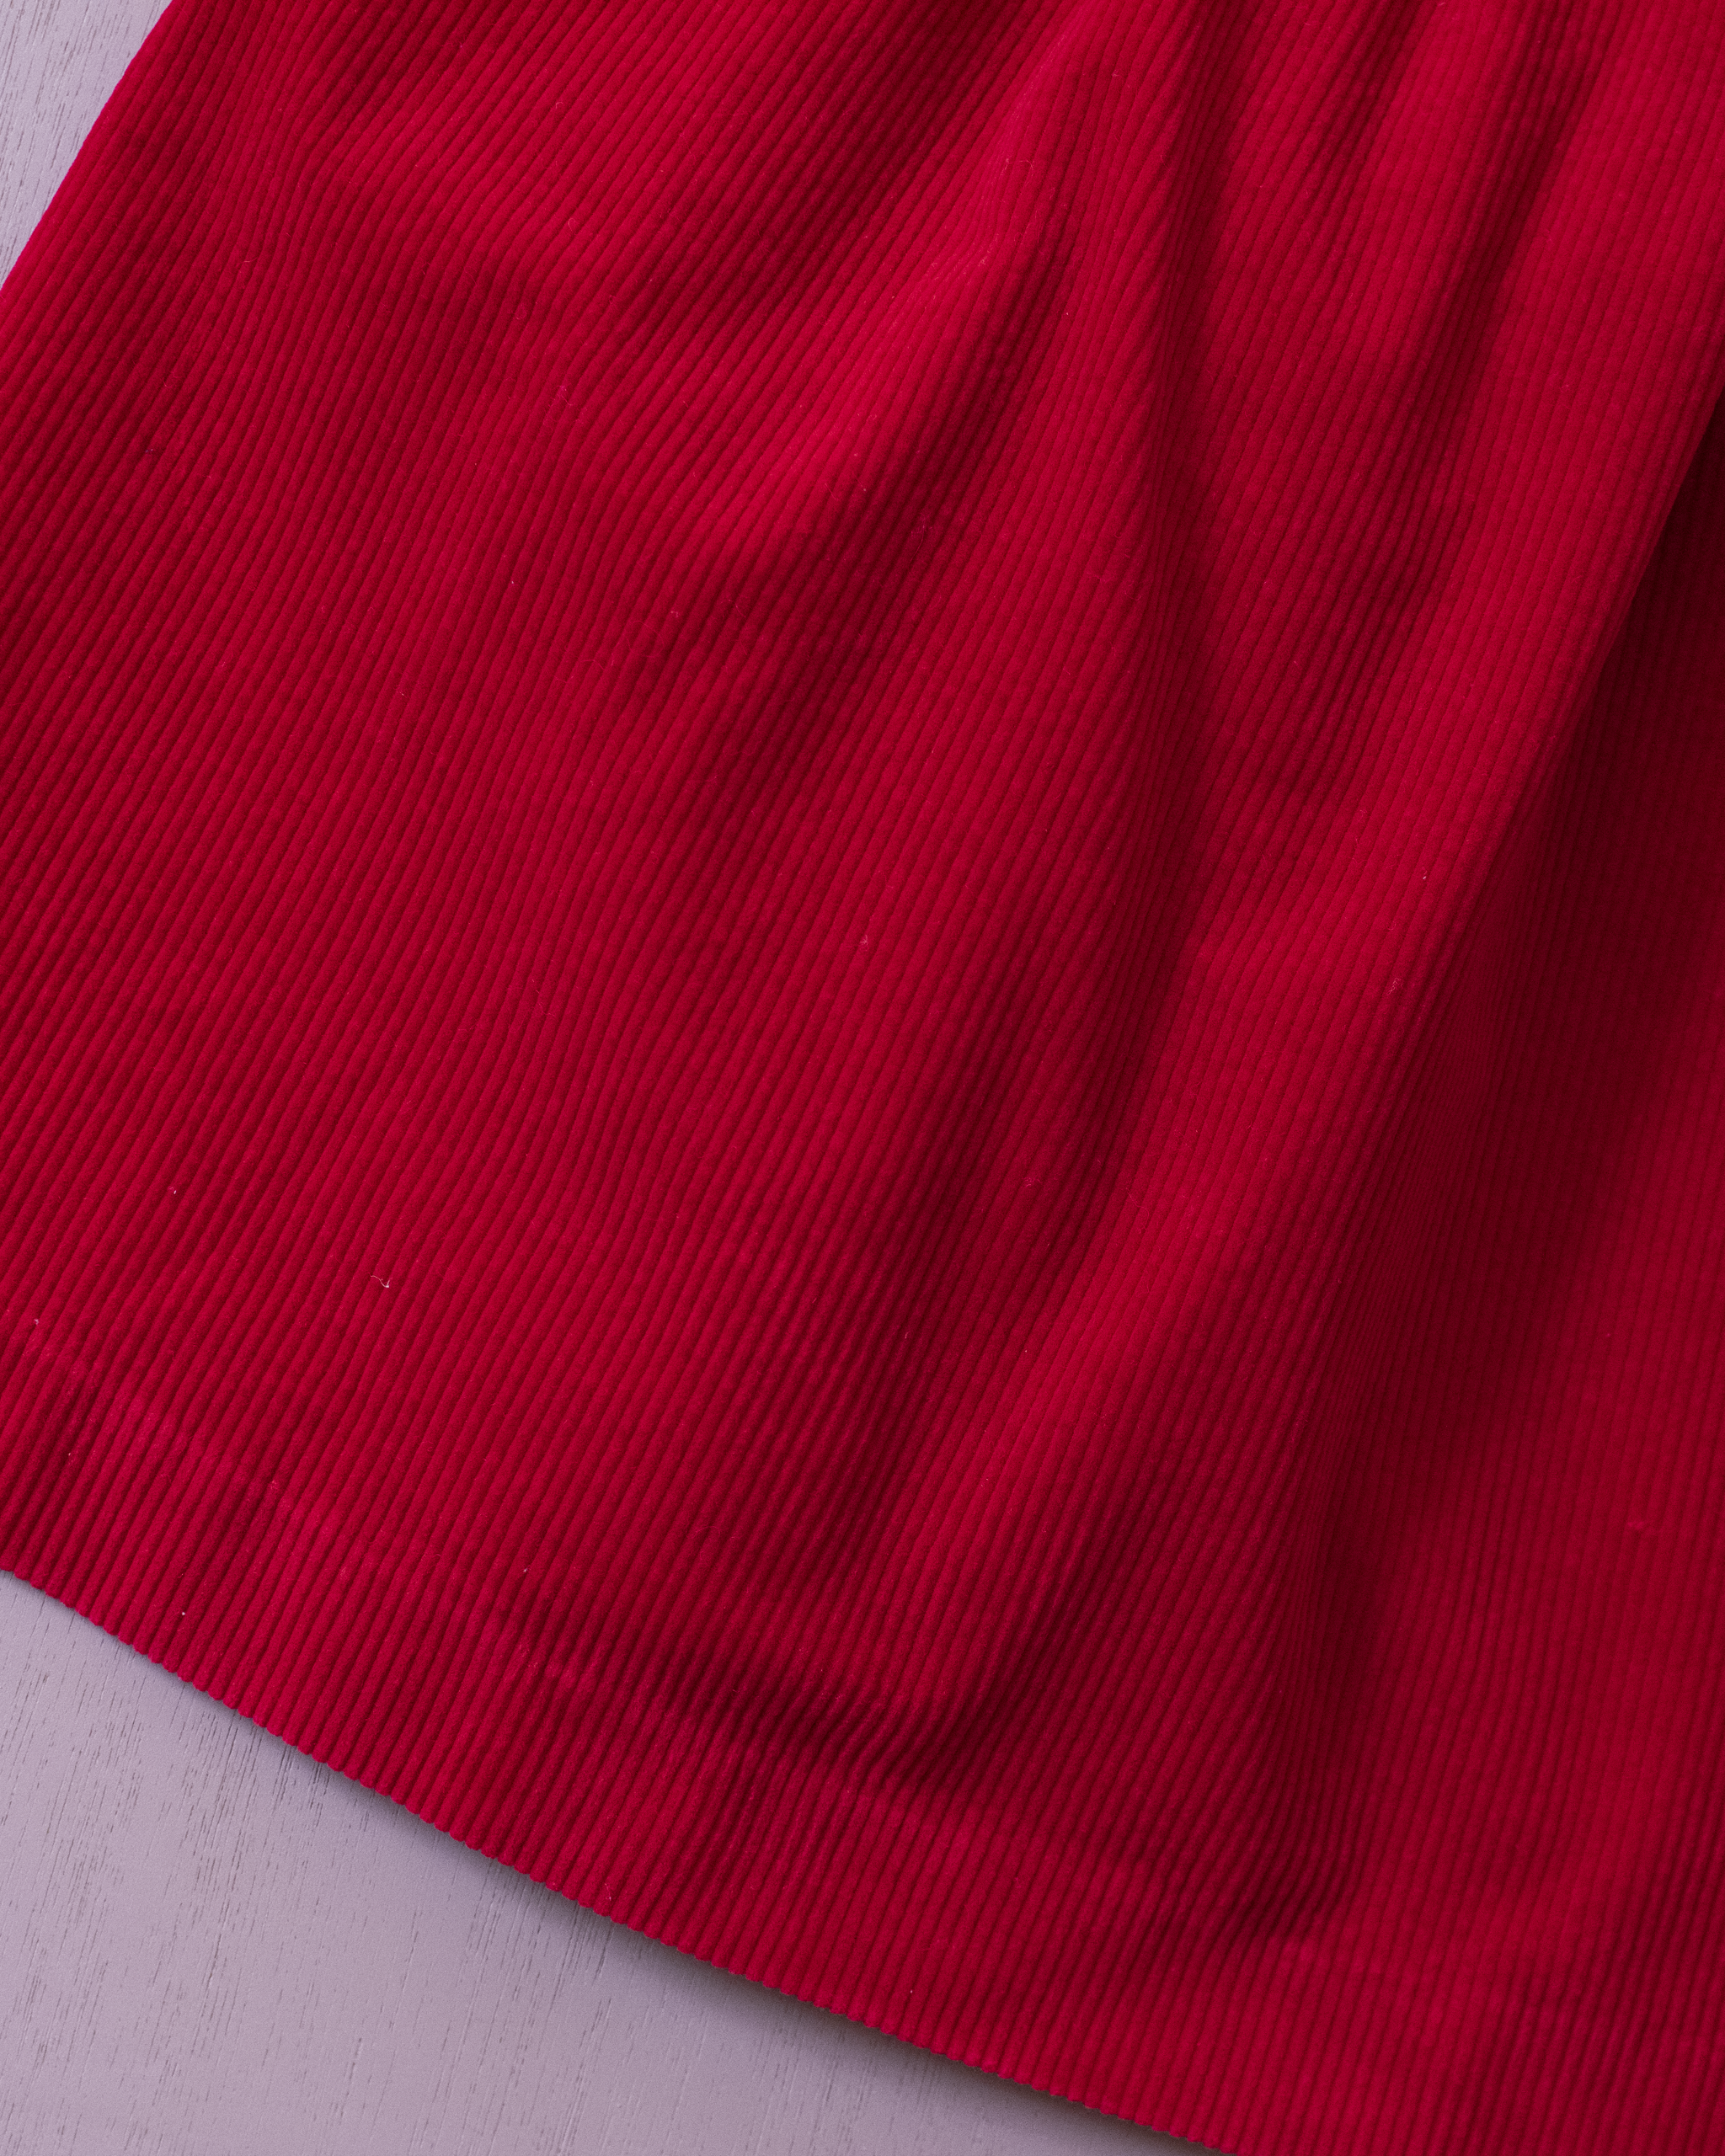 שמלת קורדרוי אדומה עם משבצות | 5-6 שנים